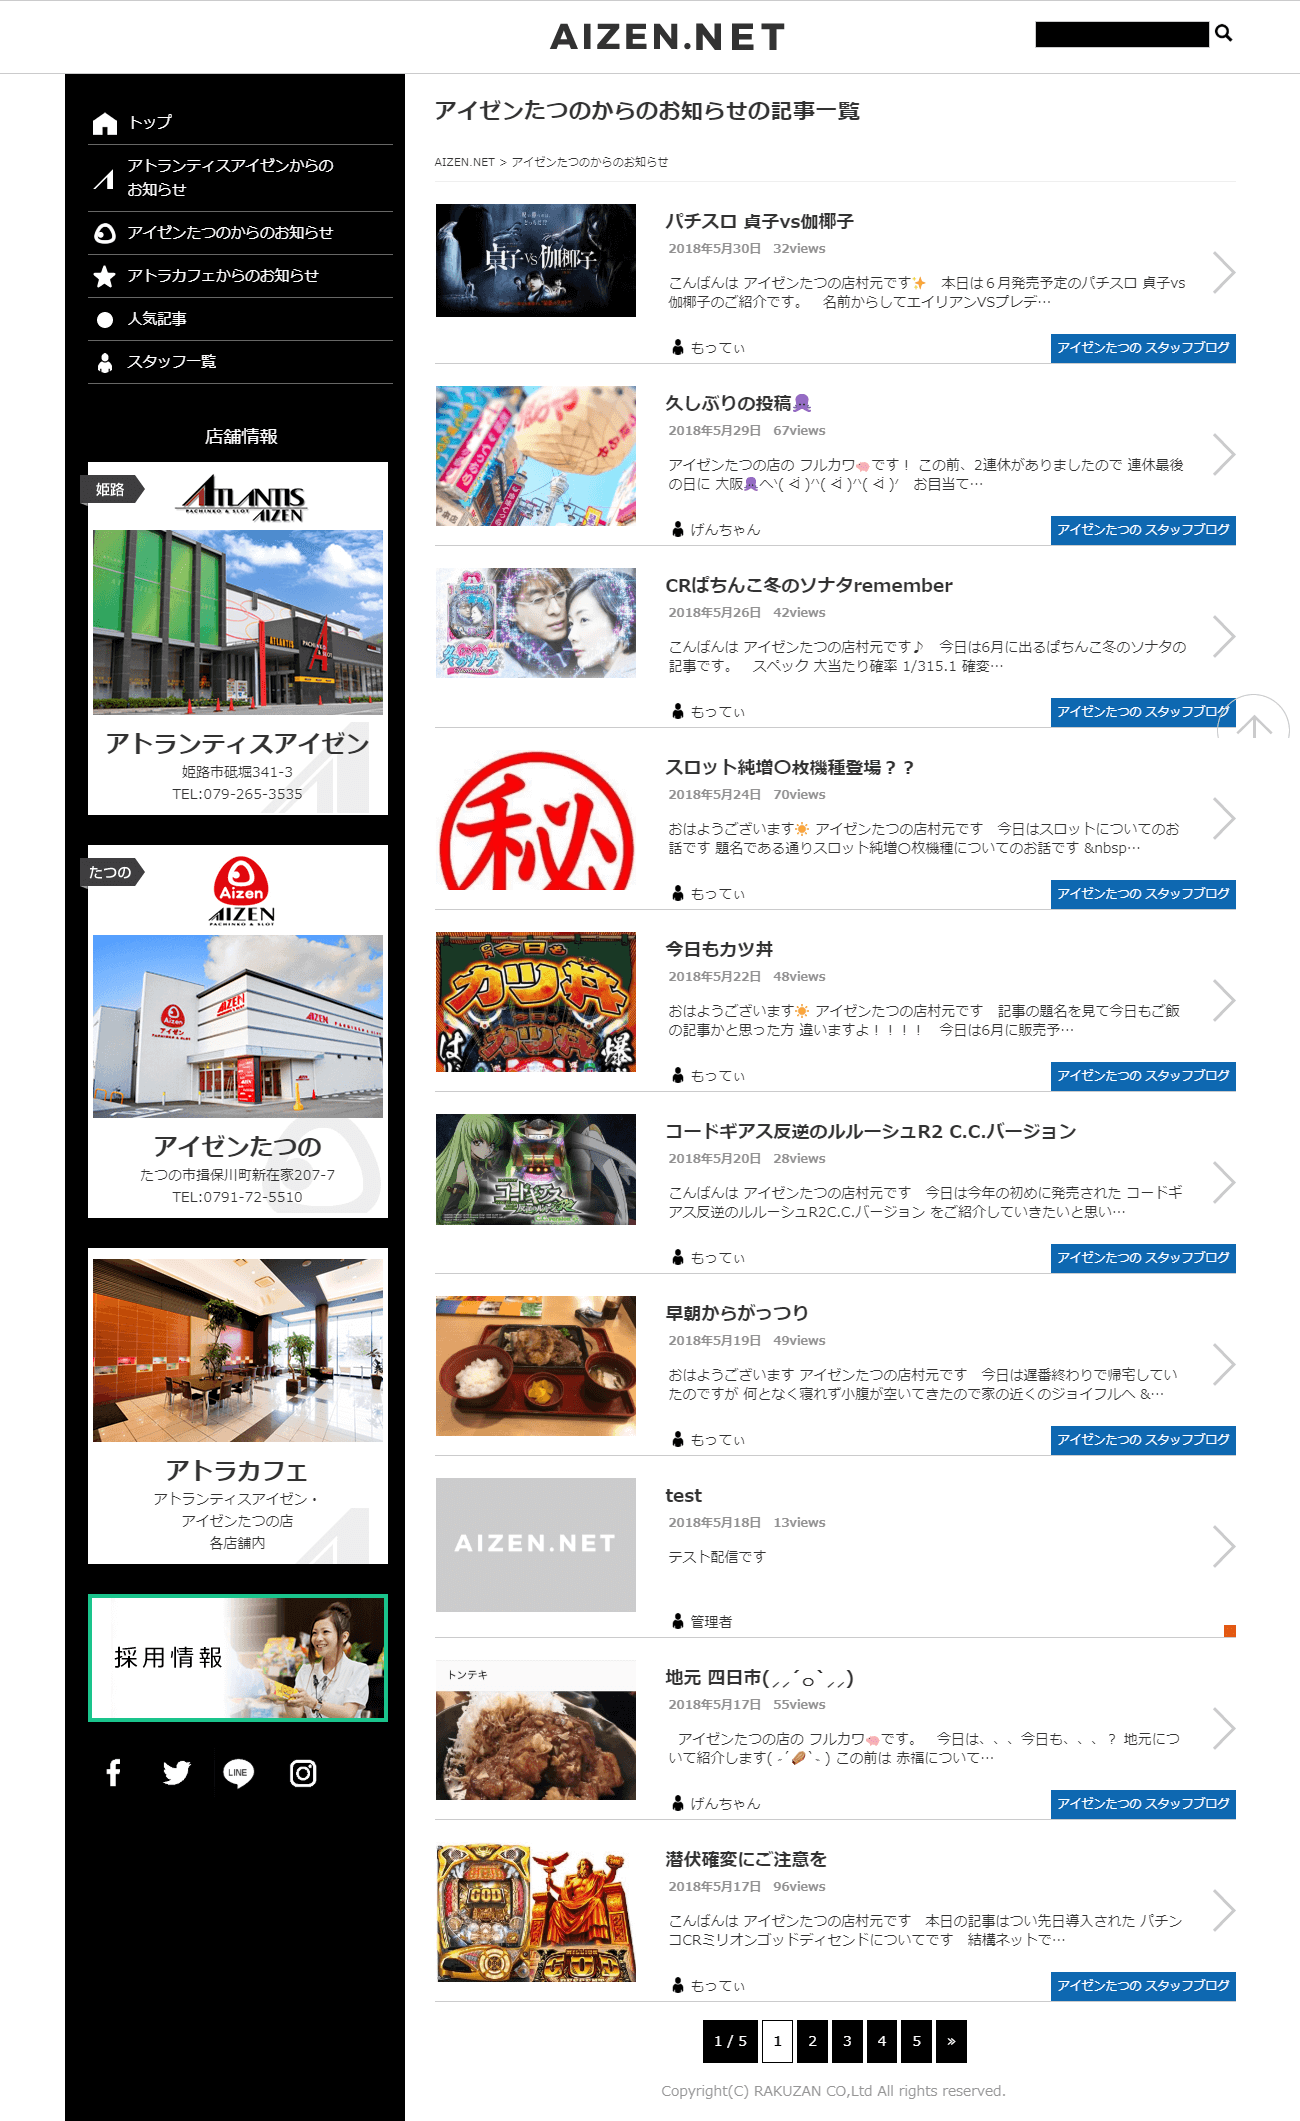 姫路市 株式会社楽山様 アイゼングループ公式ブログ「AIZEN.NET」2